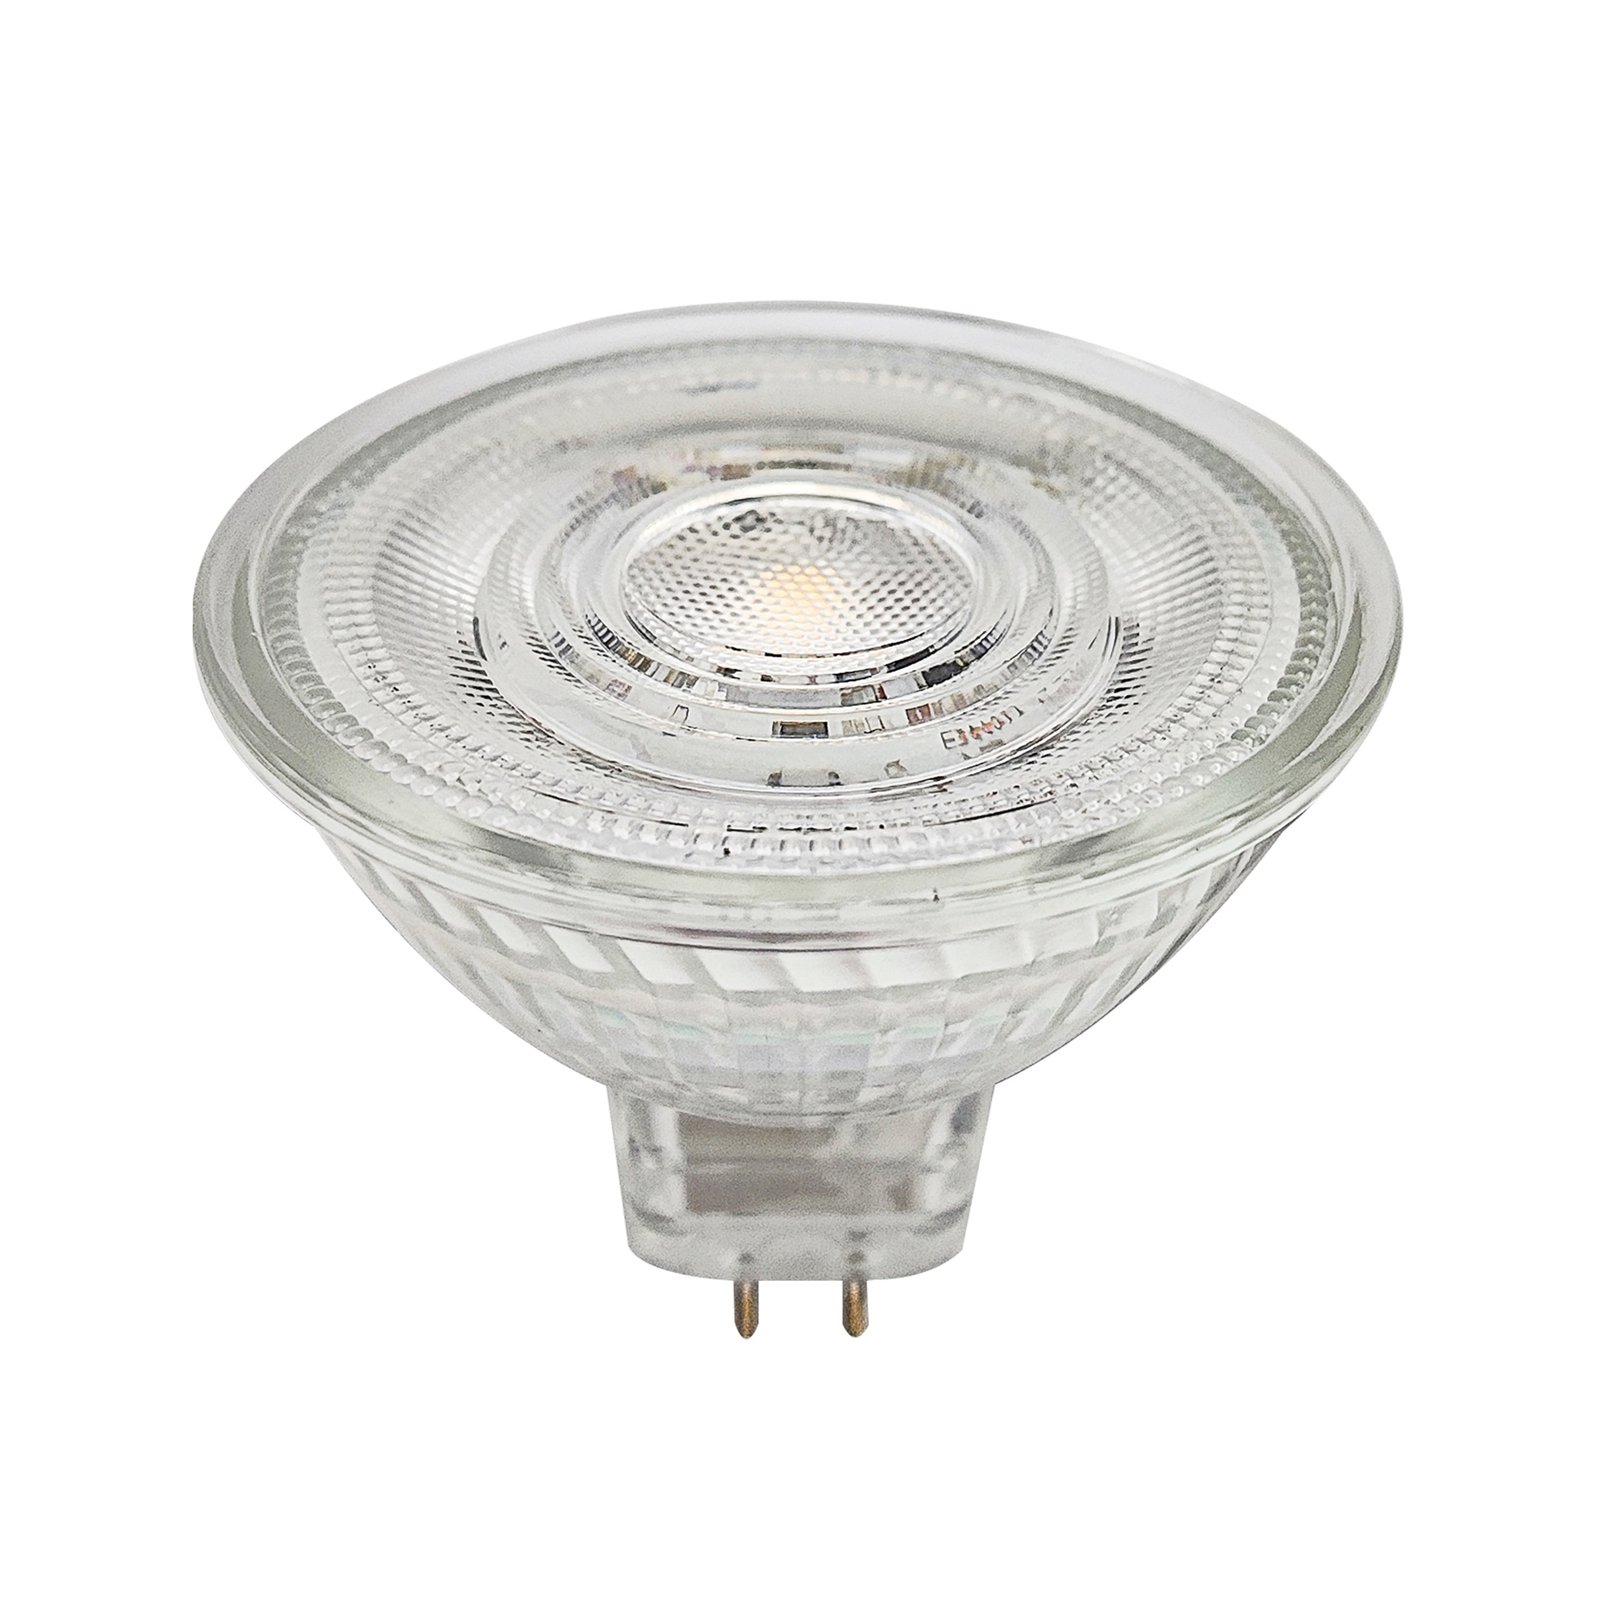 Prios LED reflectorlamp GU5.3 4.3W 345lm 36° helder 830